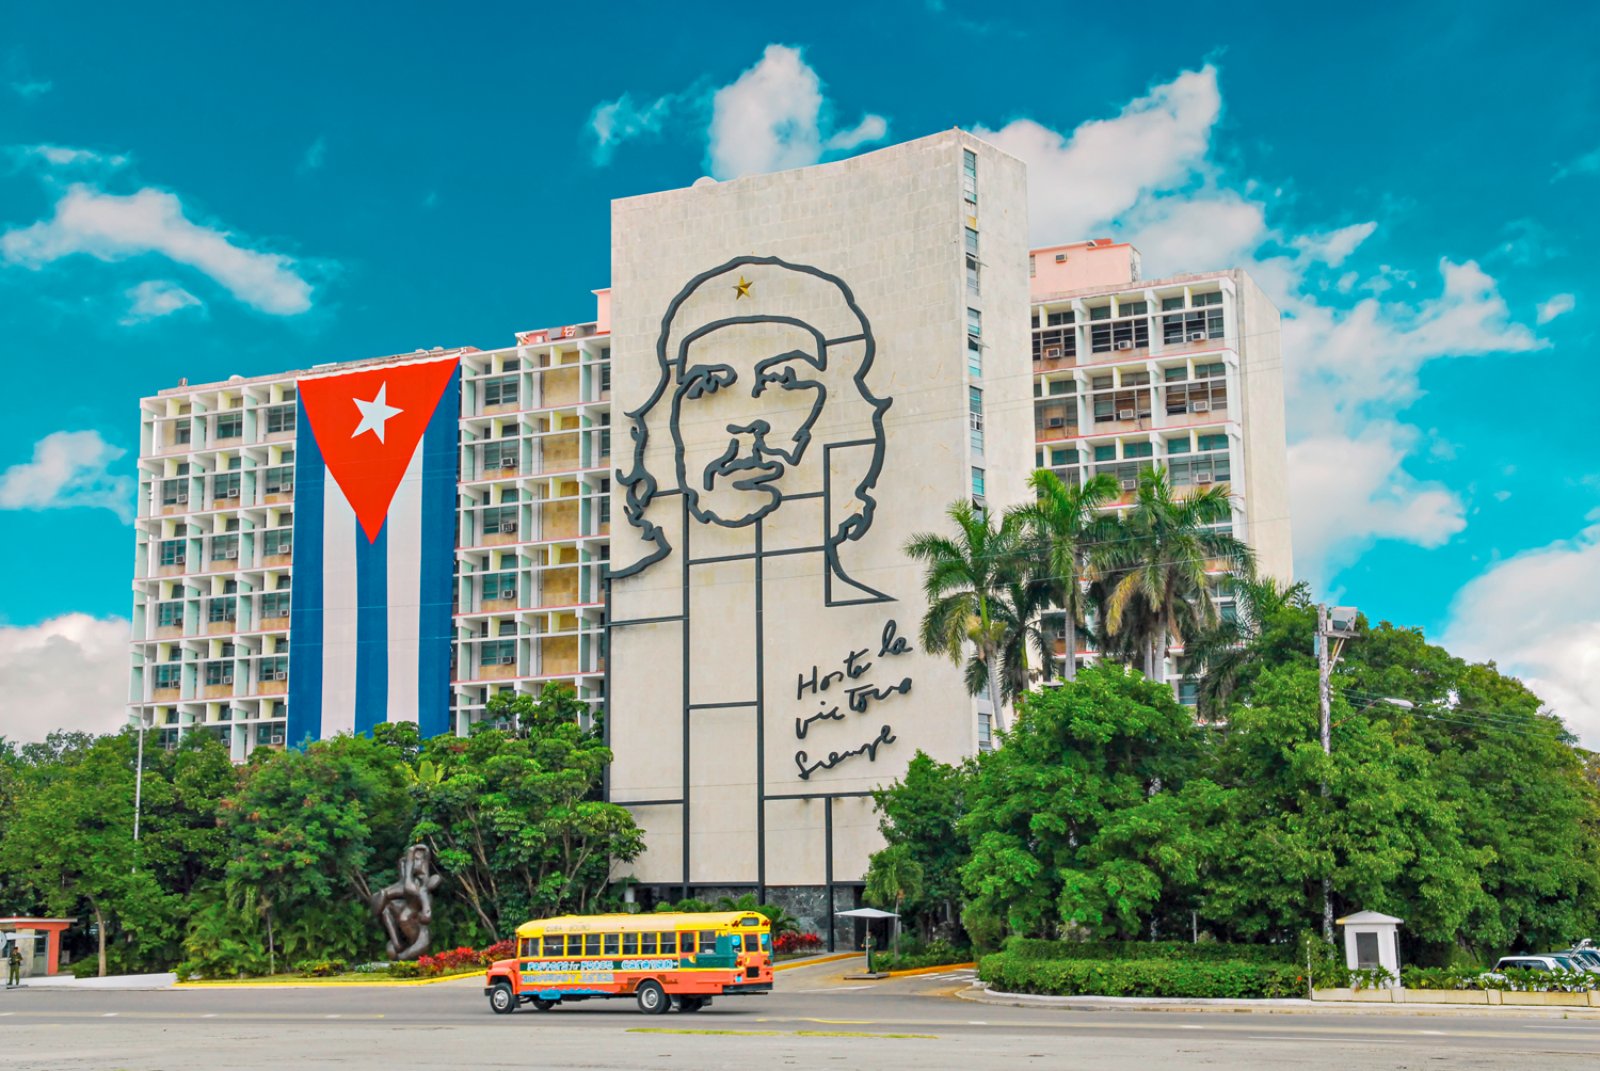 La Chiave Del Golfo - Piazza Della Rivoluzione - L'Avana